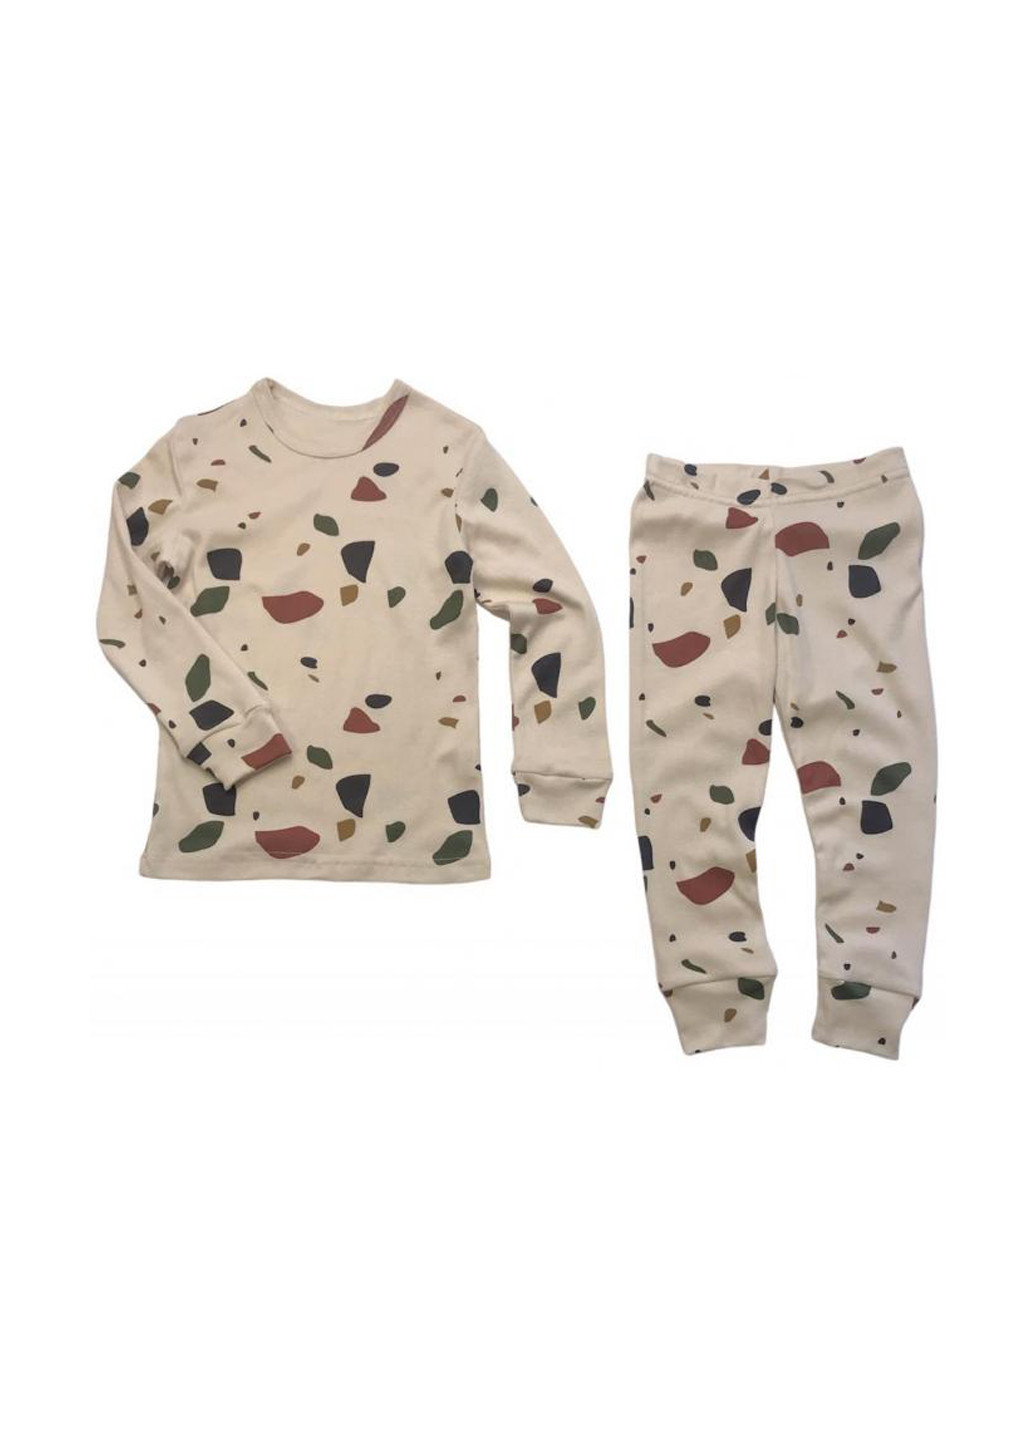 Бежевая всесезон пижама (свитшот, брюки) свитшот + брюки ArDoMi